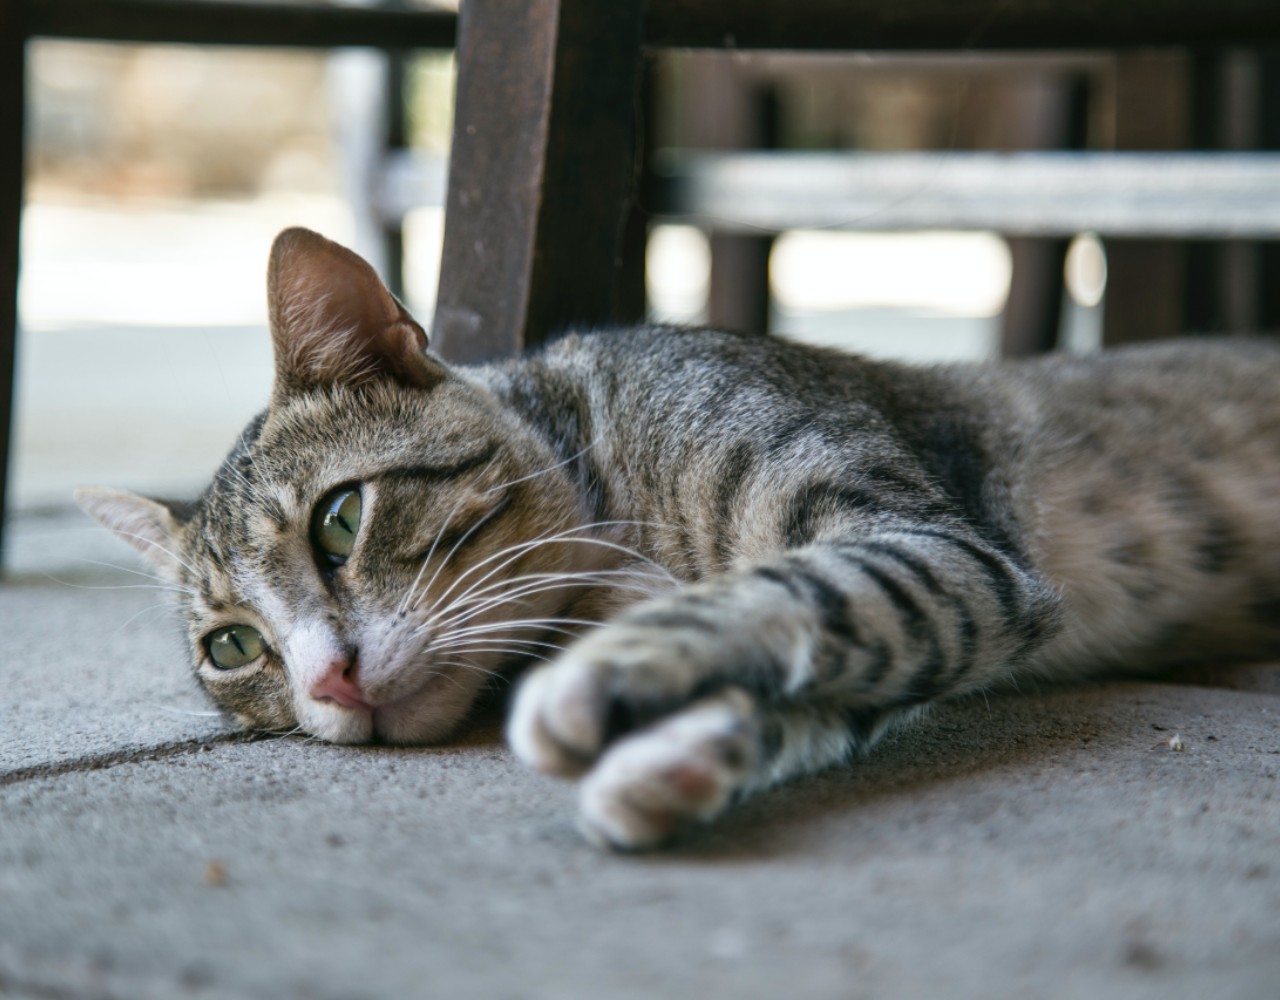 Νέα Σμύρνη: Έκλεψαν τα σπιτάκια που έχουν τοποθετήσει εθελοντές για τις αδέσποτες γάτες